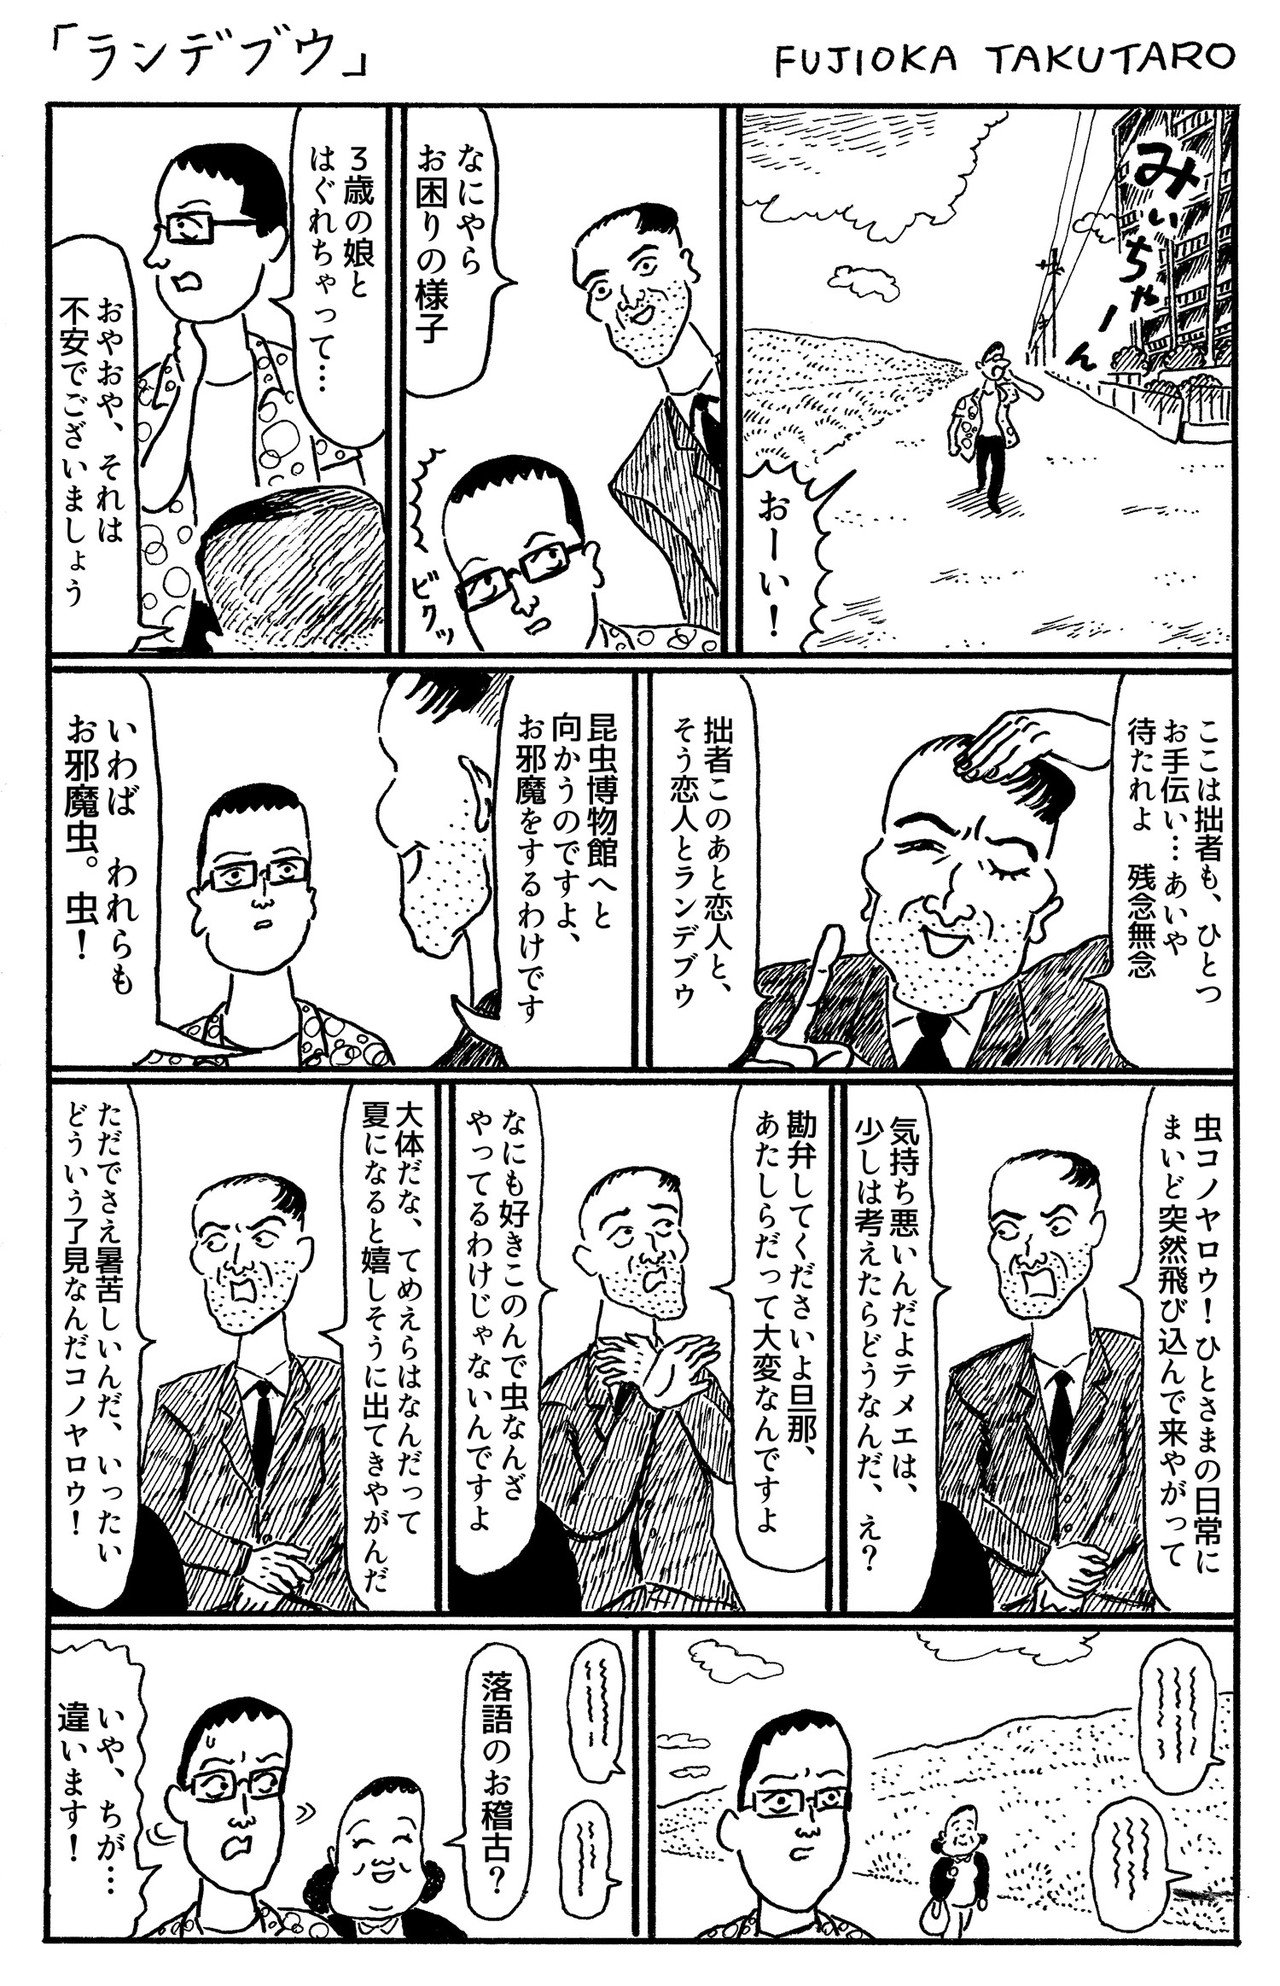 1ページ漫画 ランデブウ 藤岡拓太郎 Note